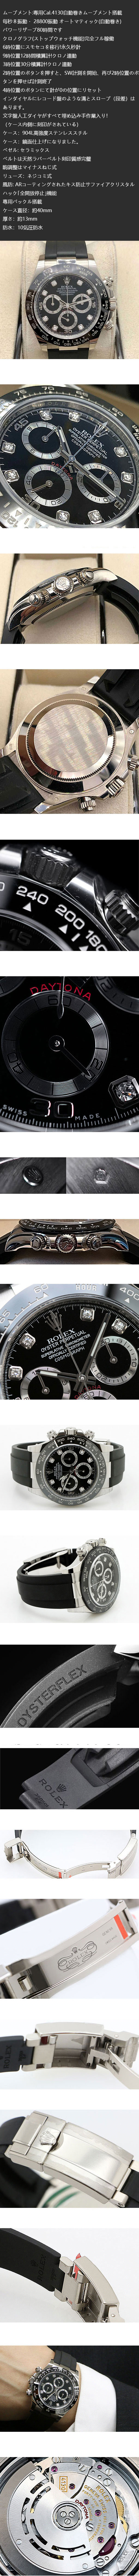 ロレックス デイトナ 116519LNG ブラック 8Pダイヤ オイスターフレックス 時計は価格性能比が高いです。